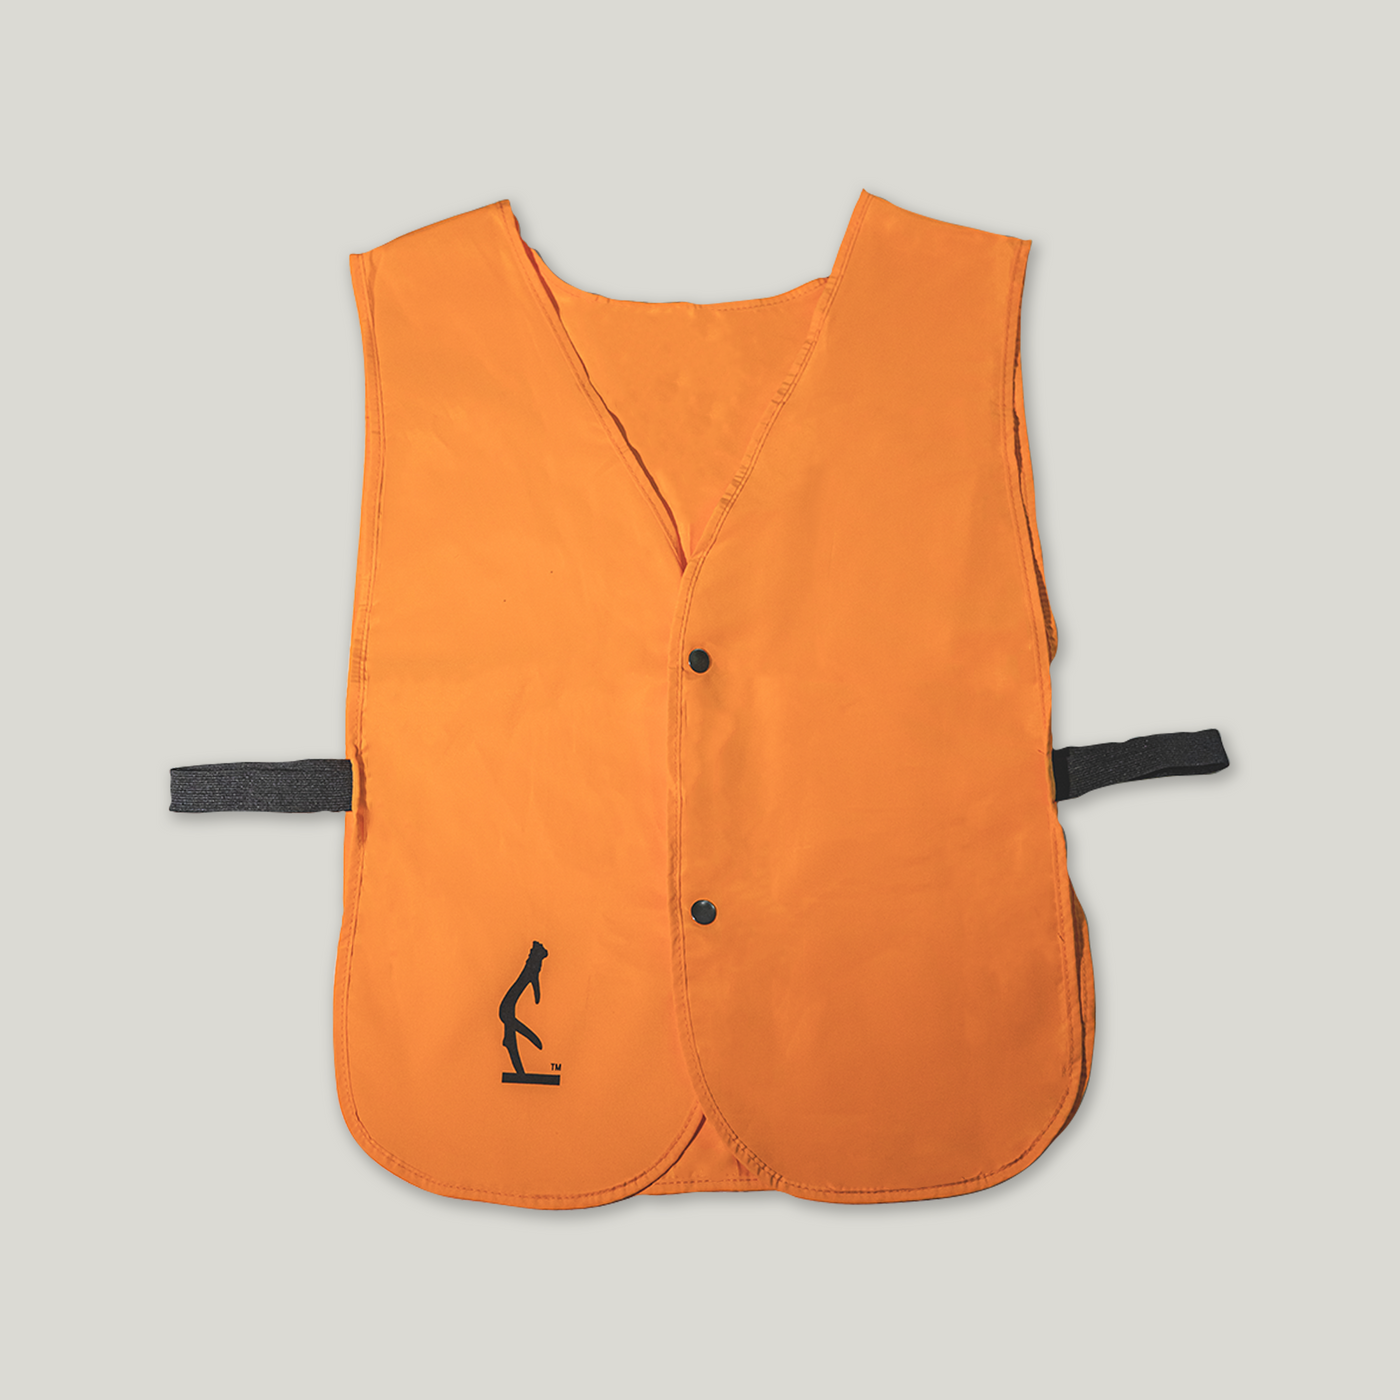 Hunter Orange Safety Vest